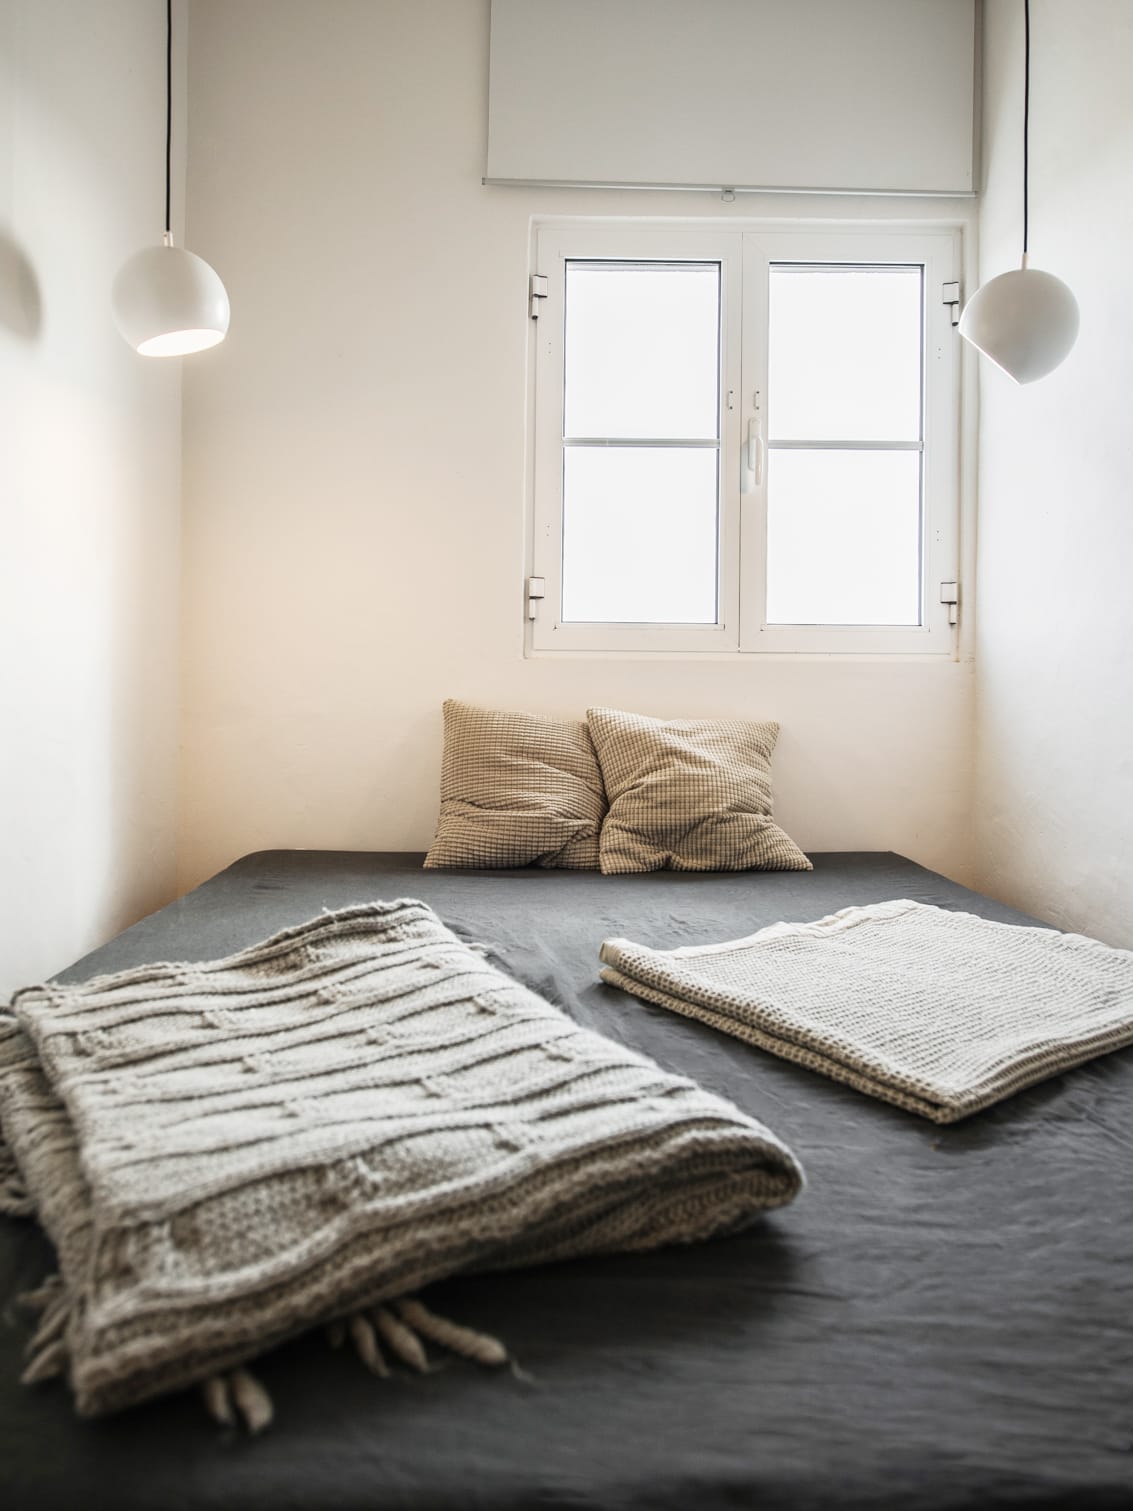 Quarto minimalista com cama, duas almofadas e dois cobertores